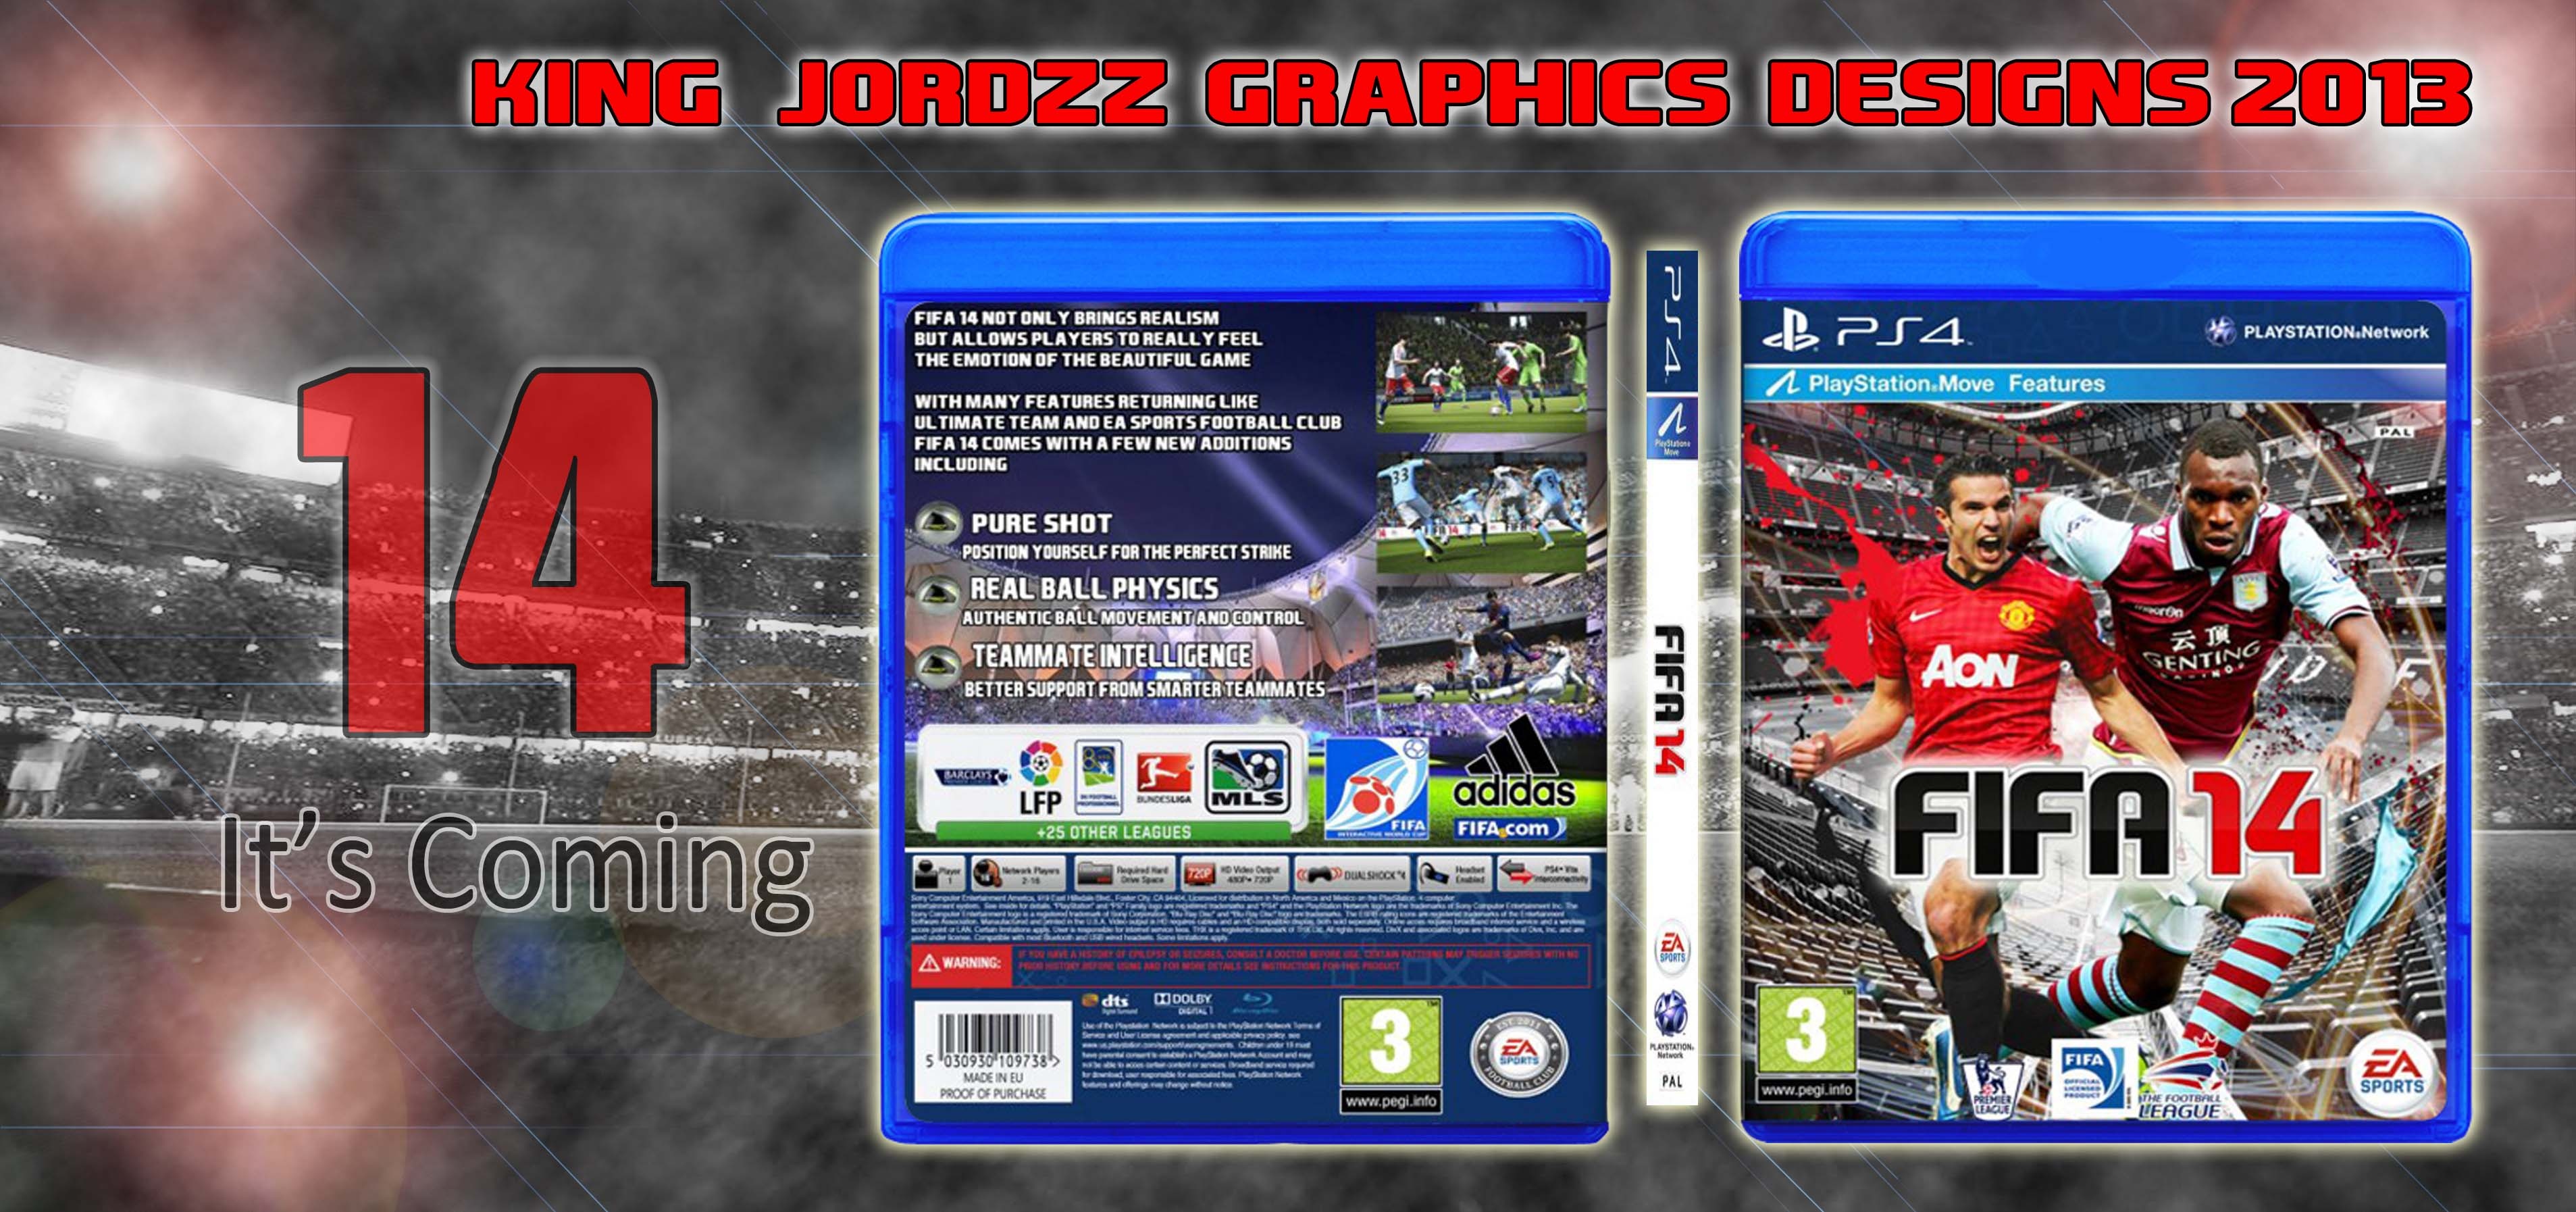 FIFA 14 box cover